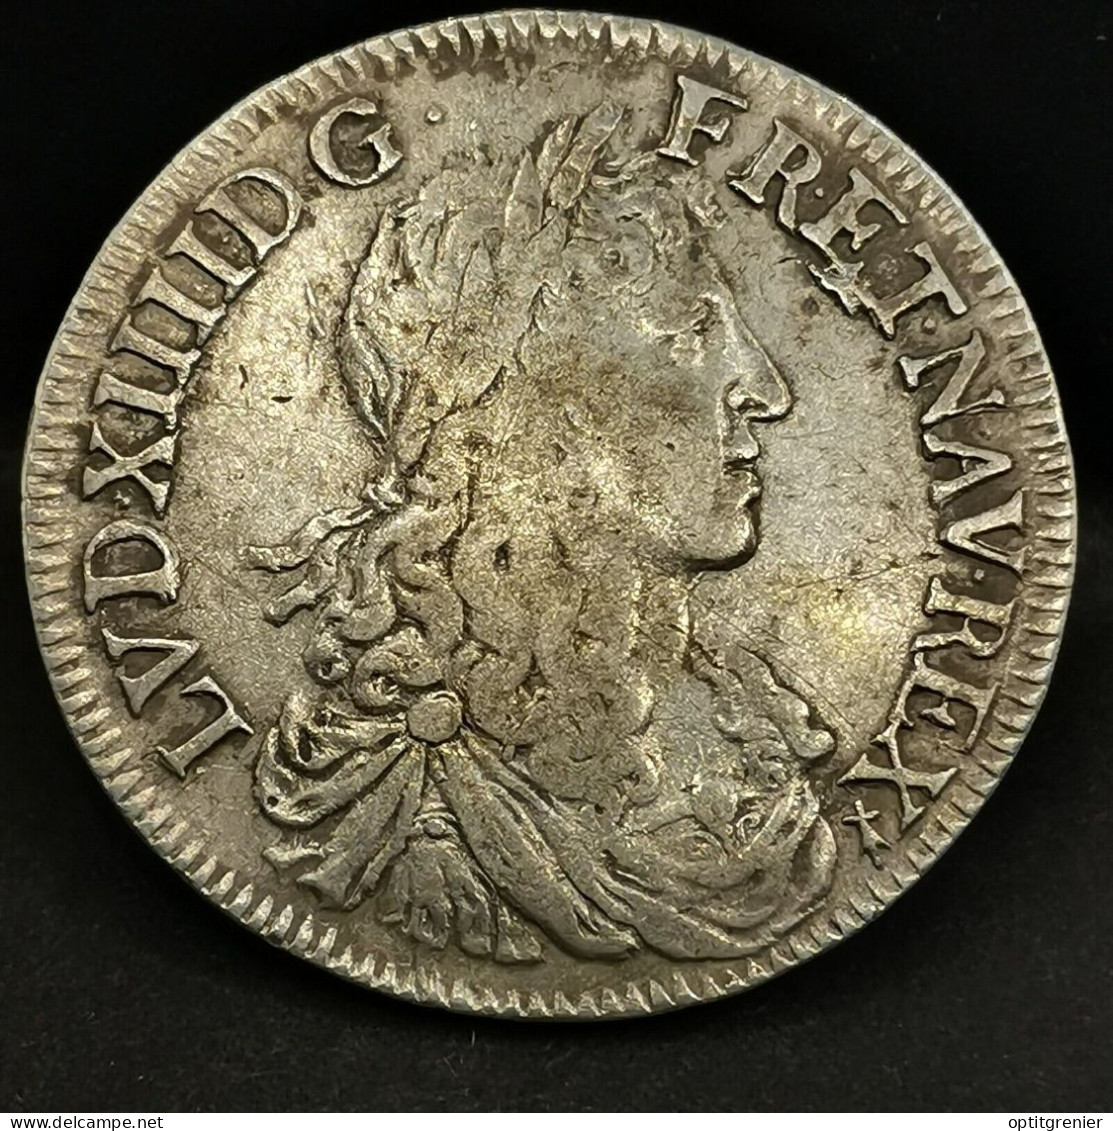 1/2 ECU ARGENT LOUIS XIV AU BUSTE JUVENILE 1660 9 RENNES 33mm13.5g FRANCE SILVER - 1643-1715 Louis XIV The Great